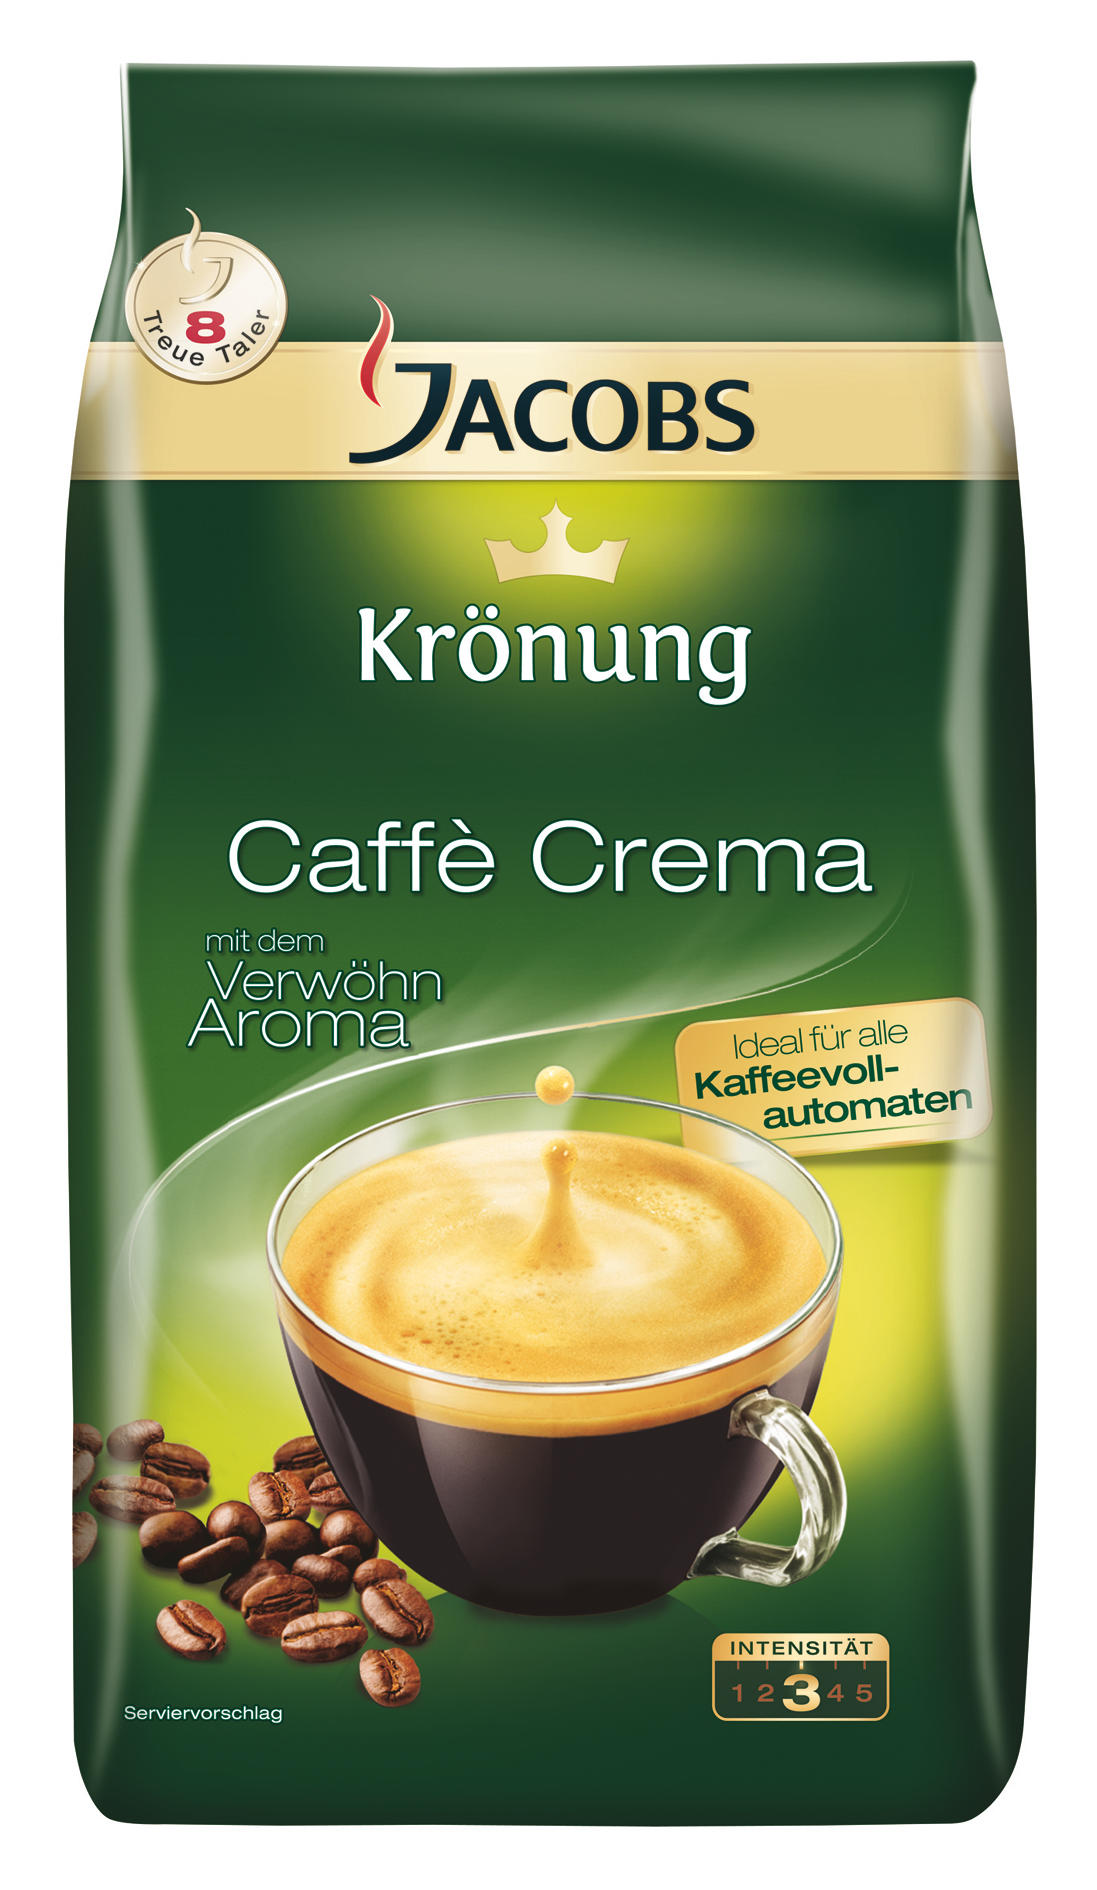 JACOBS Crema Caffe Kaffeebohnen klassisch Krönung